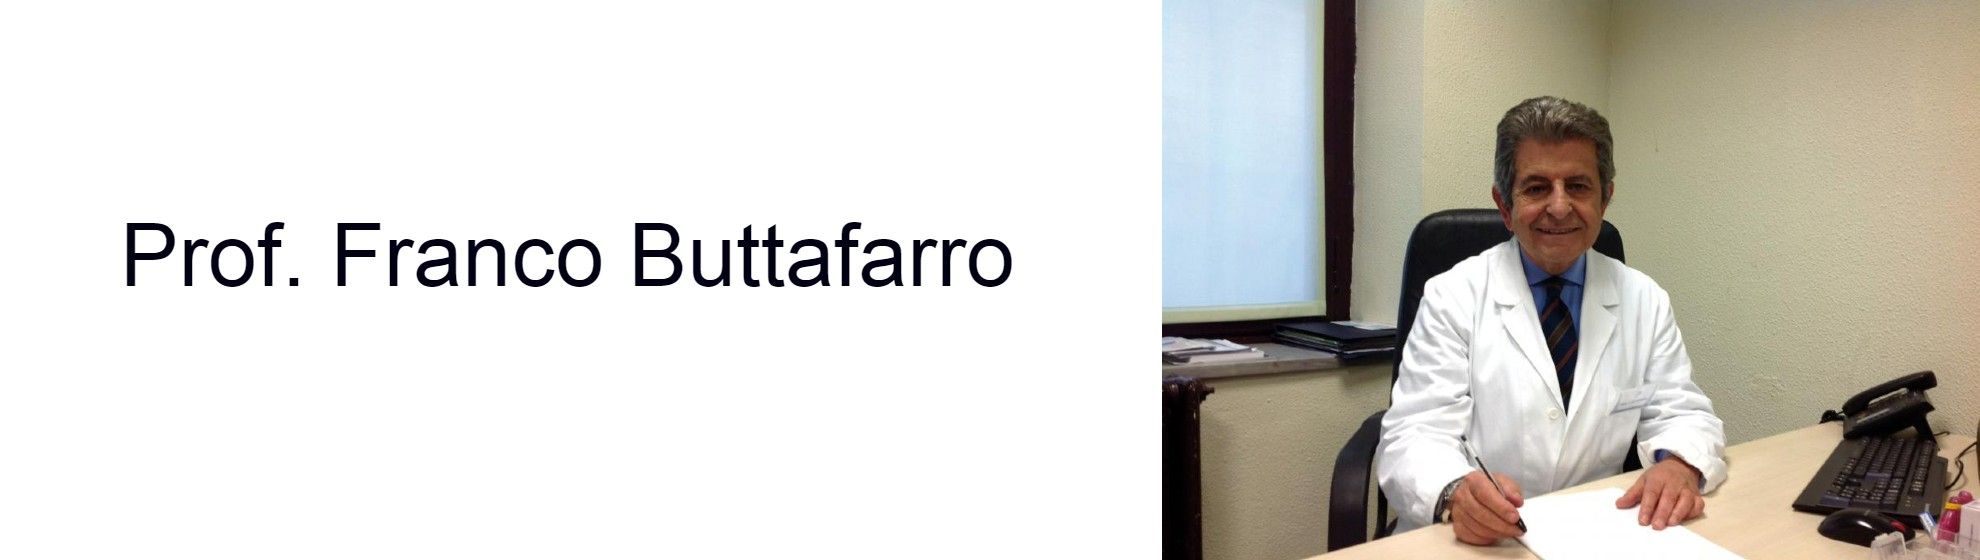 Prof. Franco Buttafarro